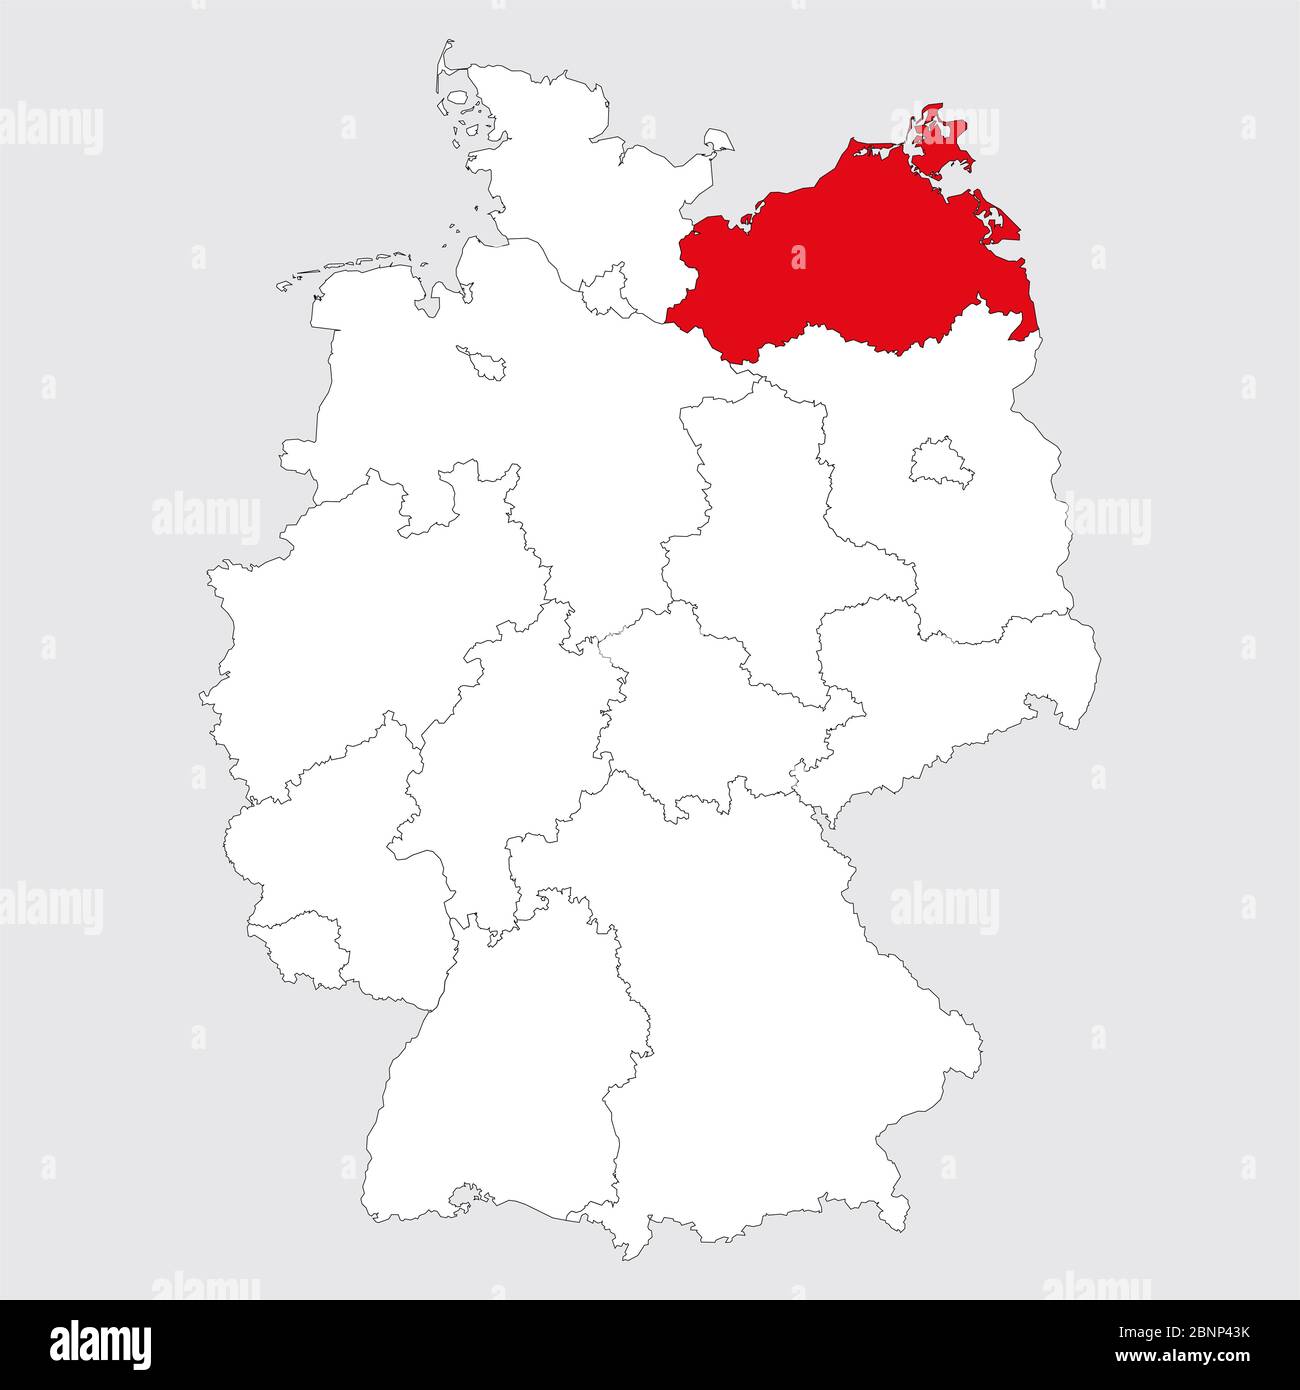 Provincia di Meclemburgo-pomerania anteriore evidenziata in rosso sulla mappa della germania. Sfondo grigio. Mappa politica tedesca. Illustrazione Vettoriale